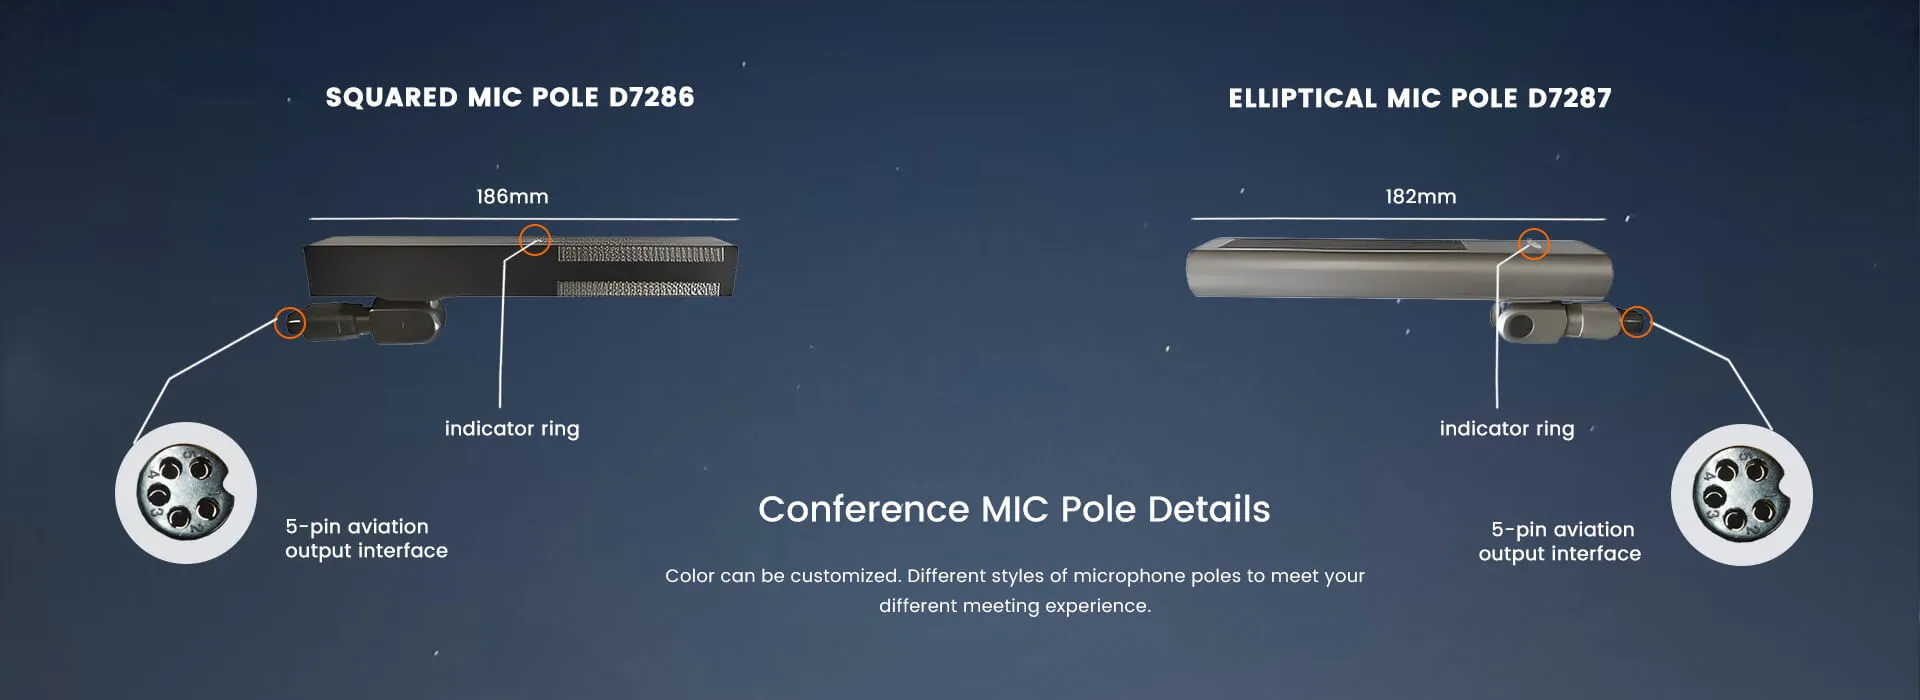 Эллиптические конференции микрофон полюс